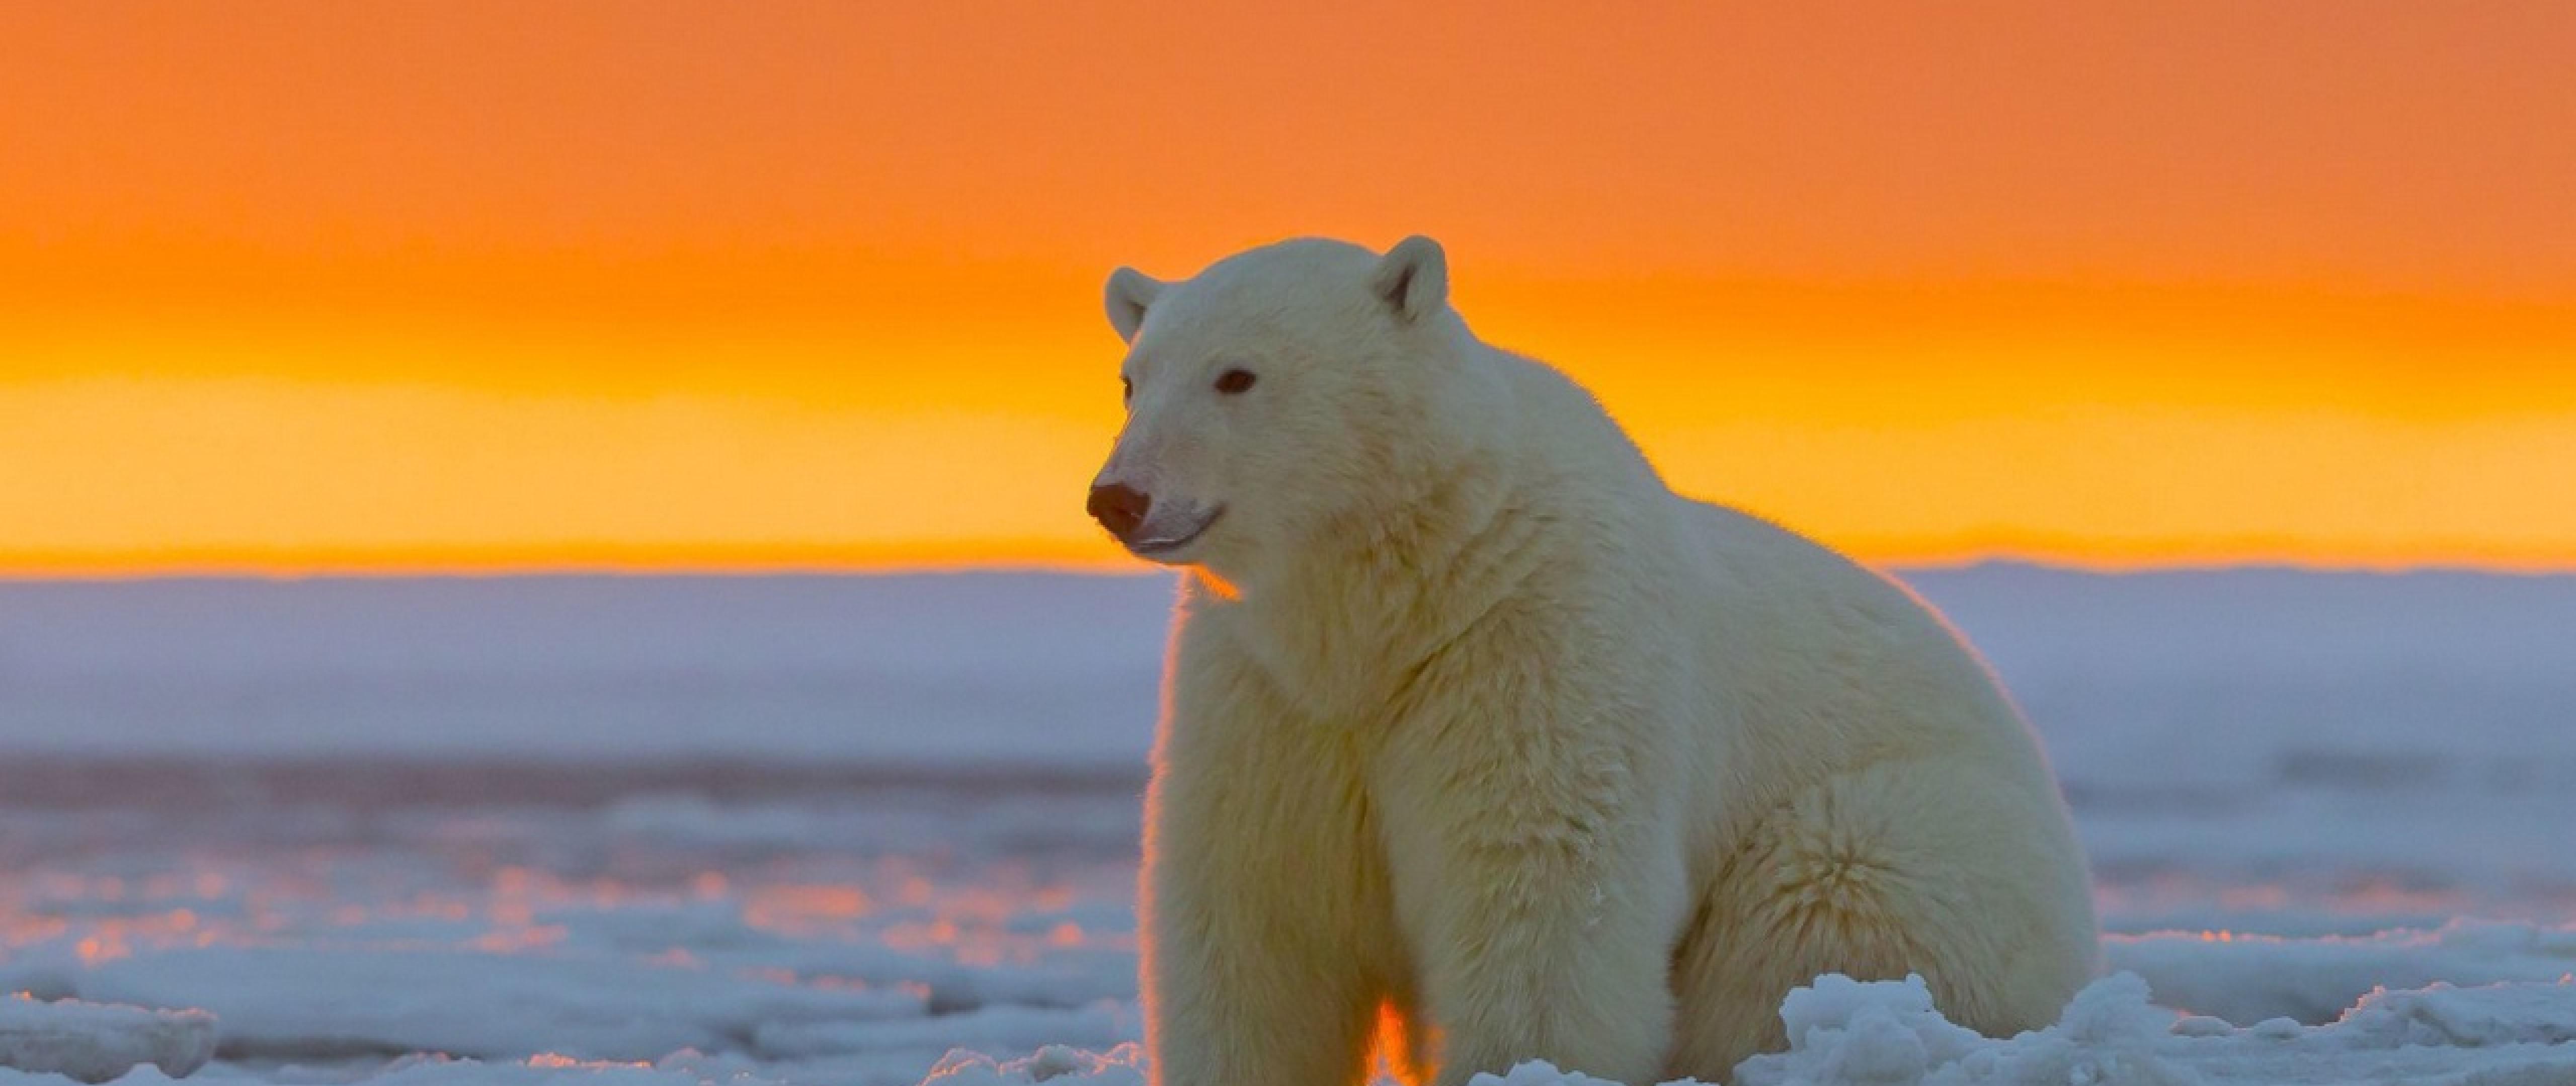 Polar Bear At Alaska HD Wallpaper 4k Ultra Wide Tv